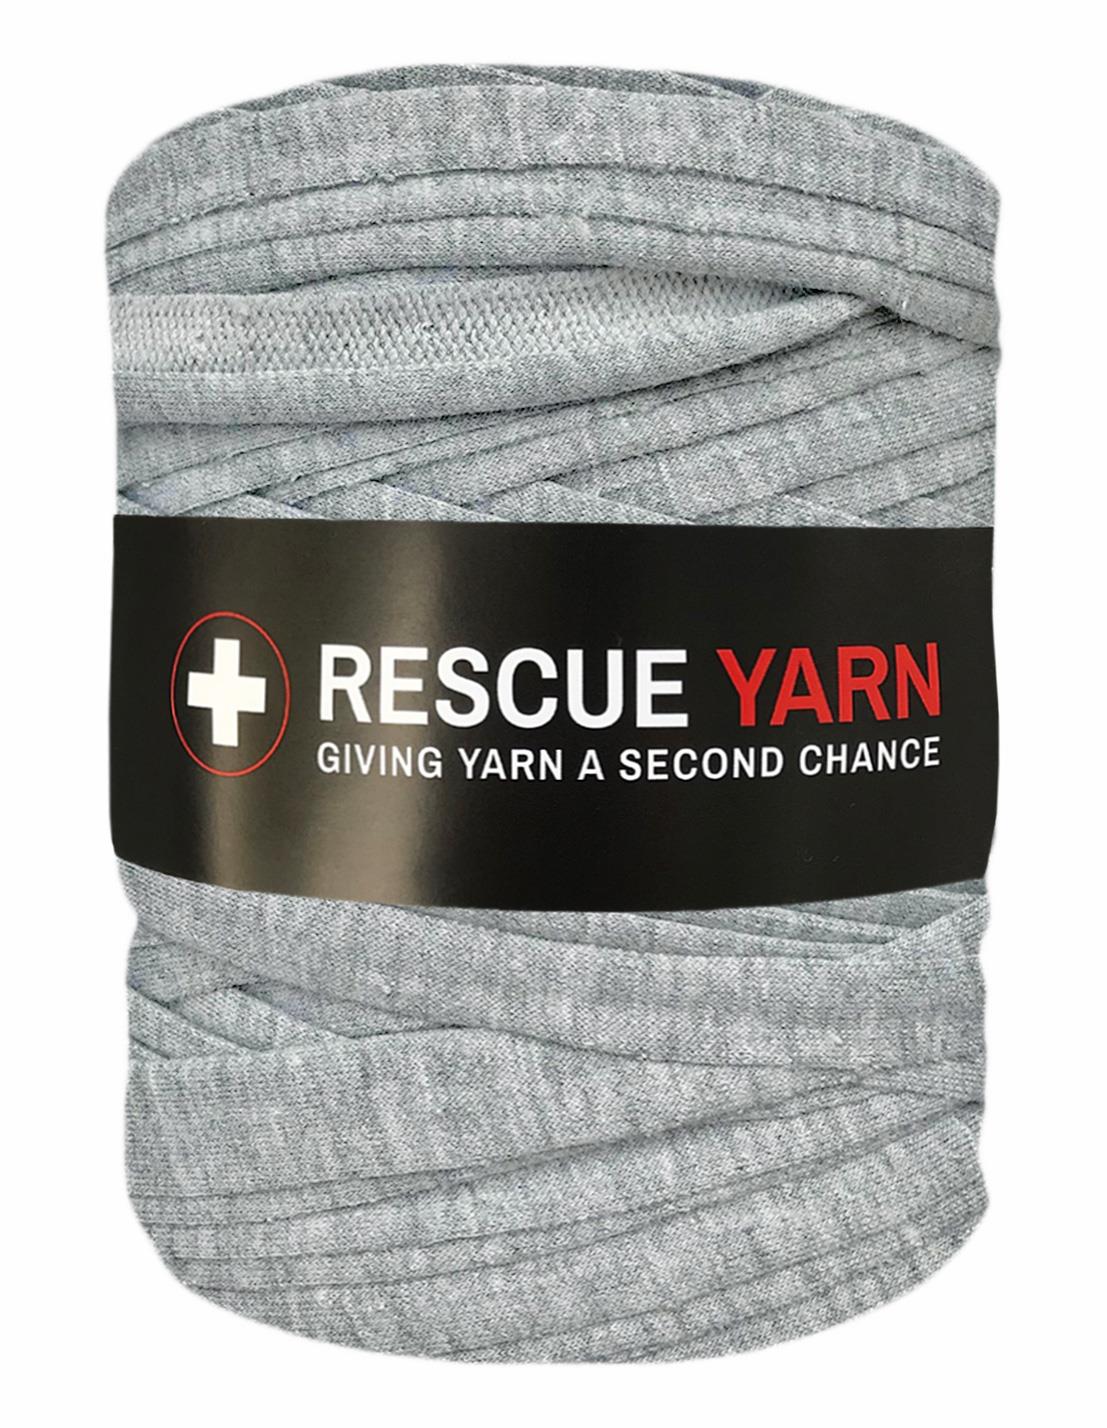 Textured back grey t-shirt yarn by Rescue Yarn (100-120m)